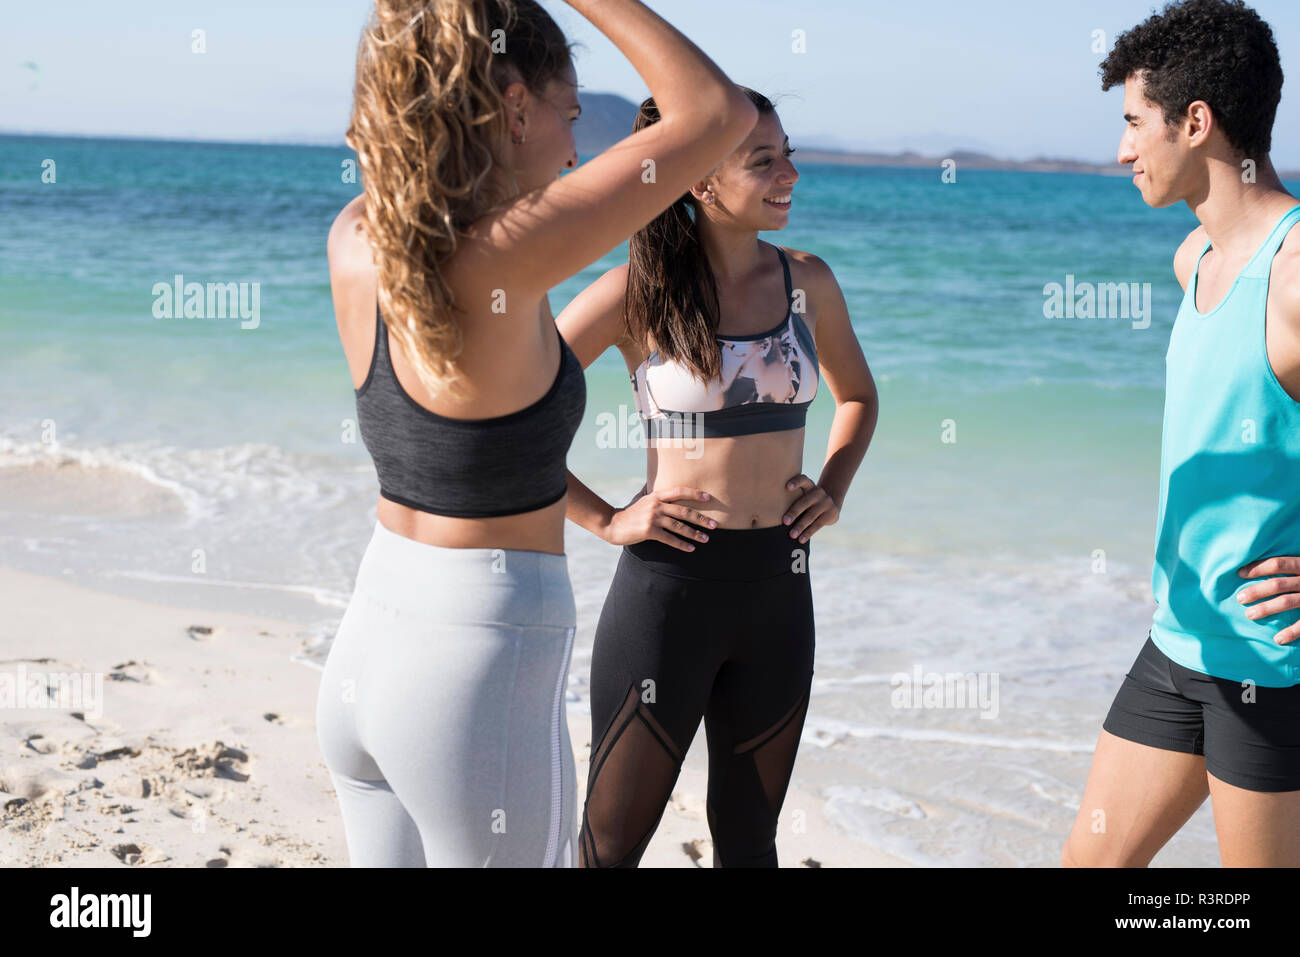 Spanien, Kanarische Inseln, Fuerteventura, drei junge Athleten der Unterhaltung am Strand Stockfoto